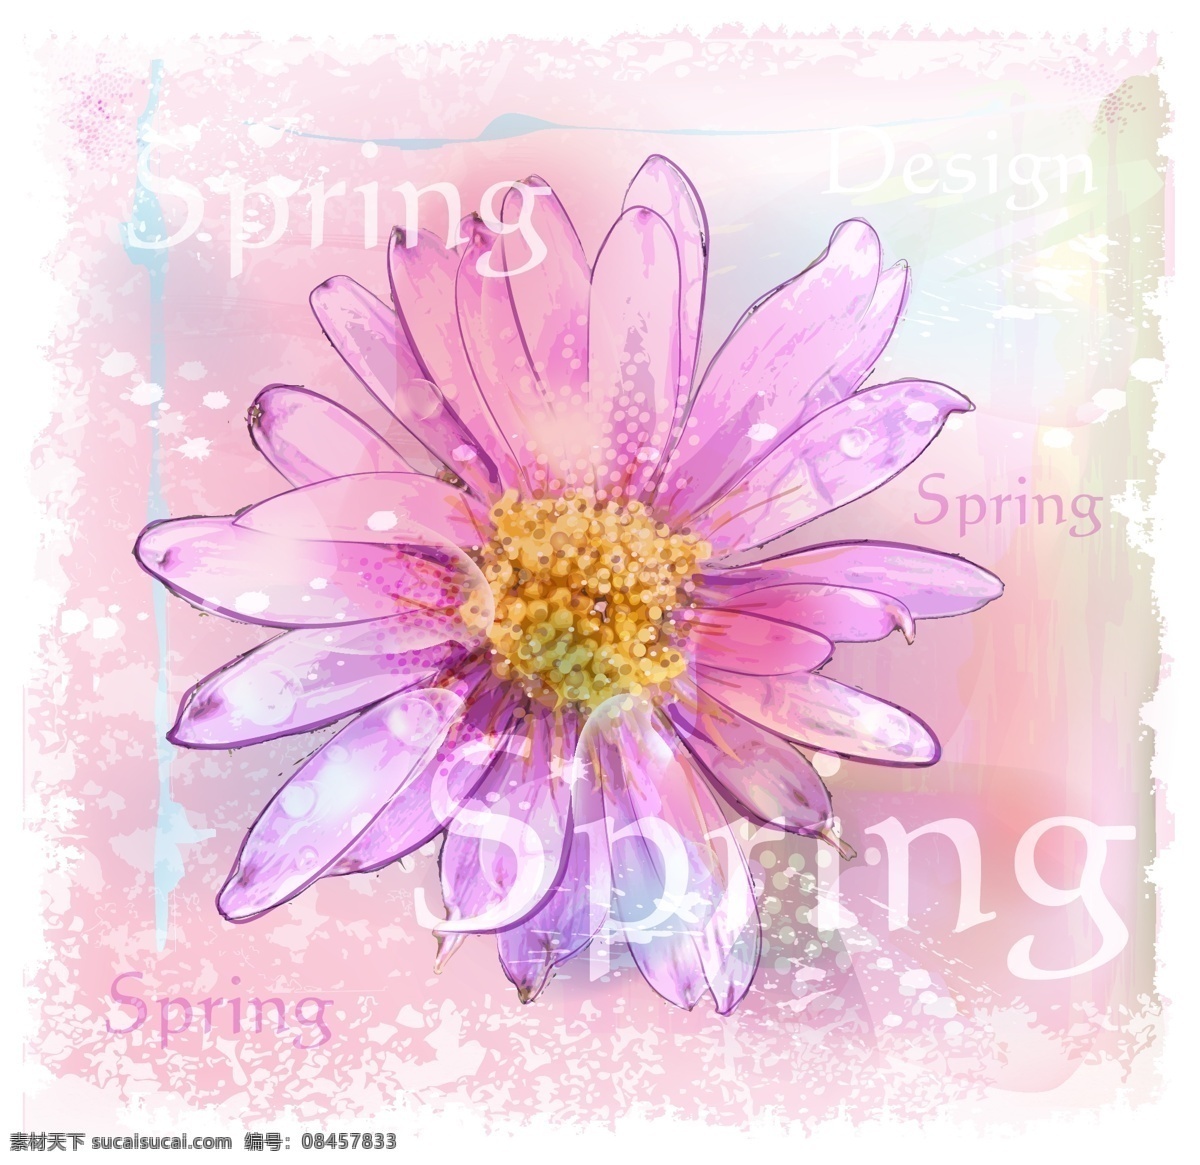 粉色 水彩 菊花 花卉 春季 插画 矢量图 矢量 高清图片